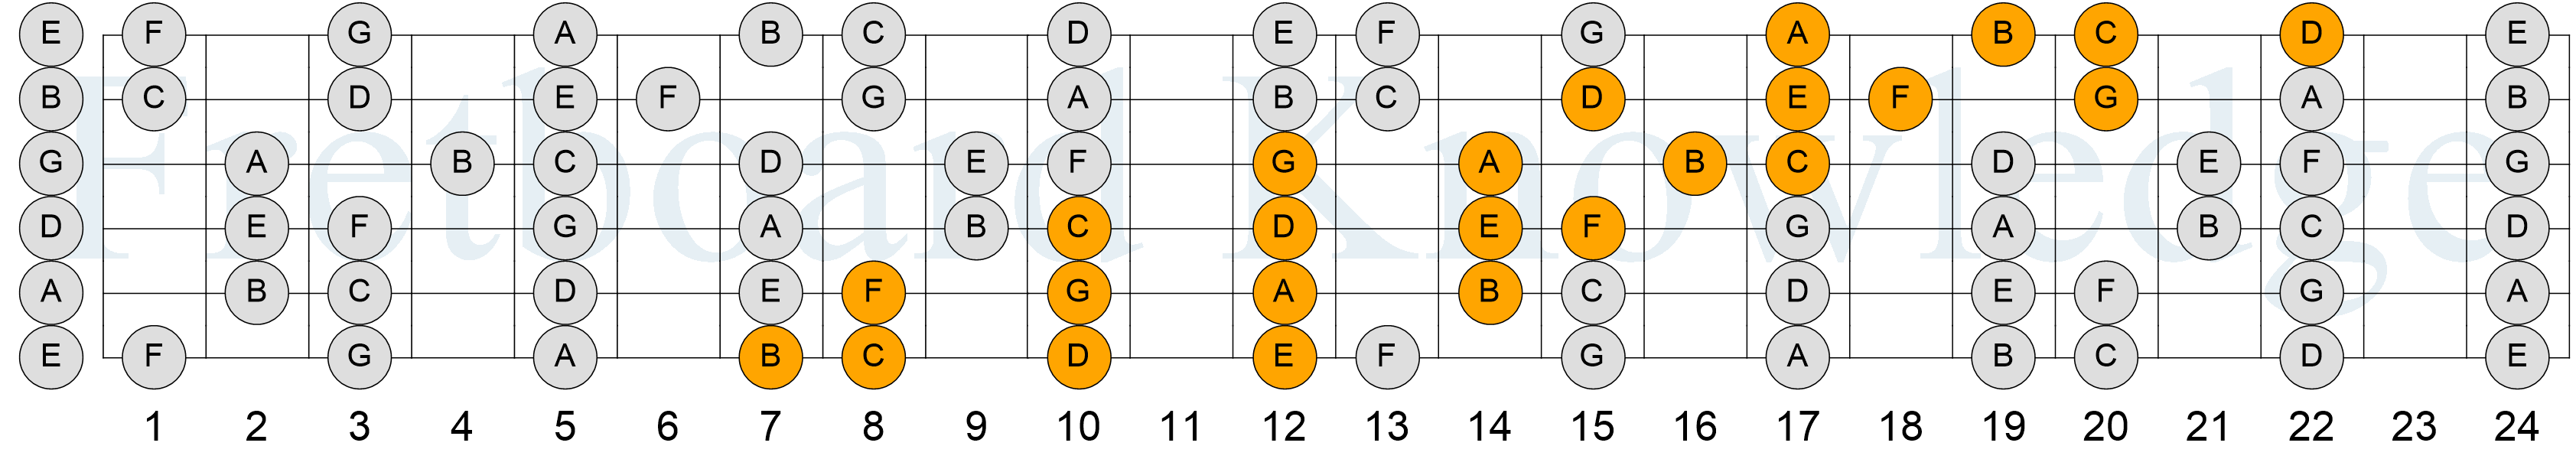 C Major Scale - 4NPS - Pattern 5